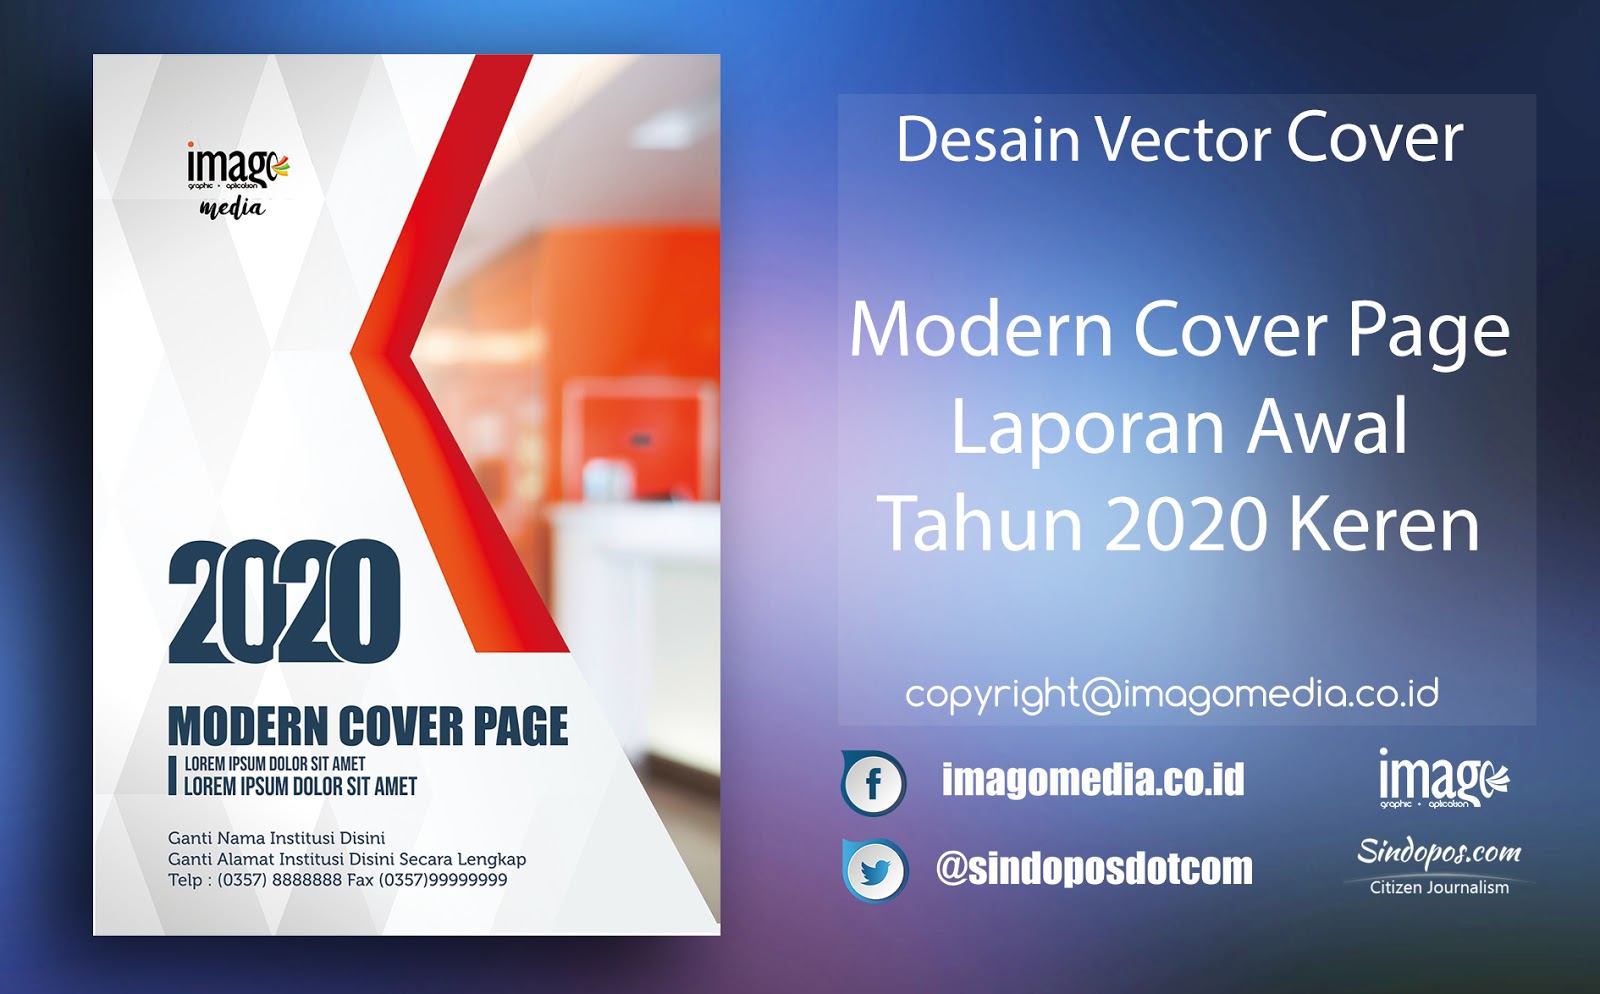 Modern Cover Page Laporan Awal Tahun 2020 Keren Imago Media Home Of